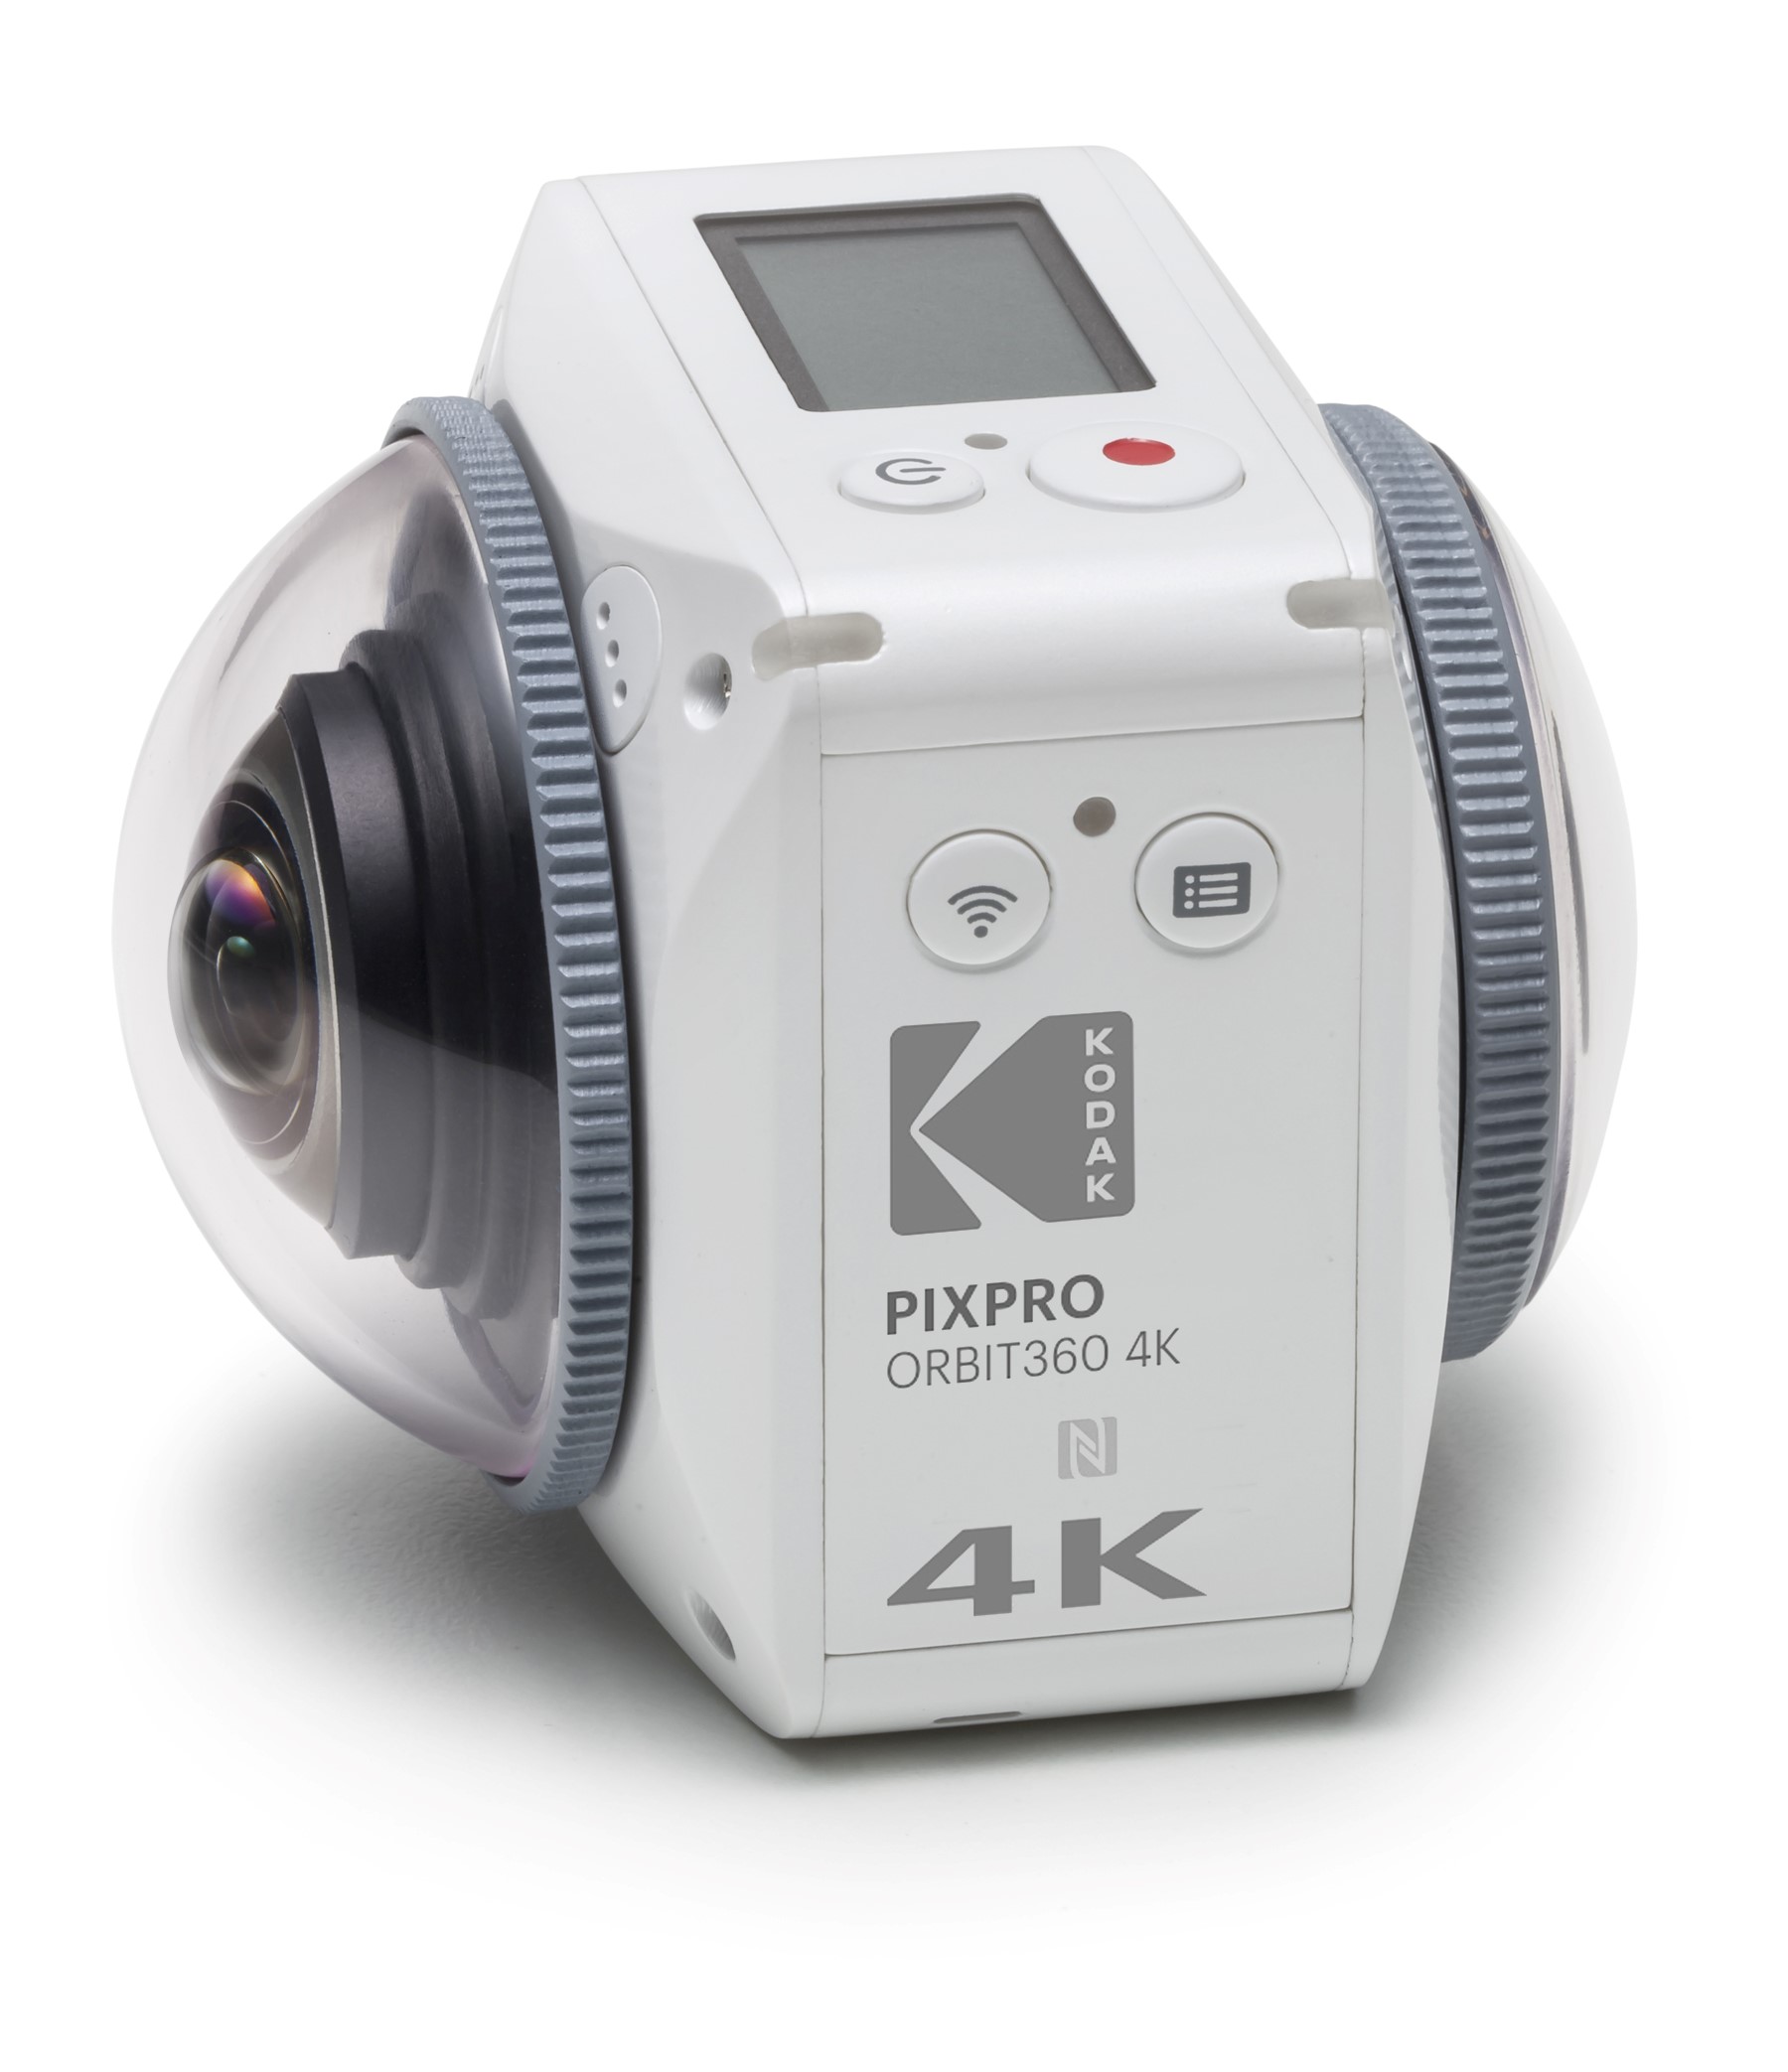 The Kodak 4k 360.